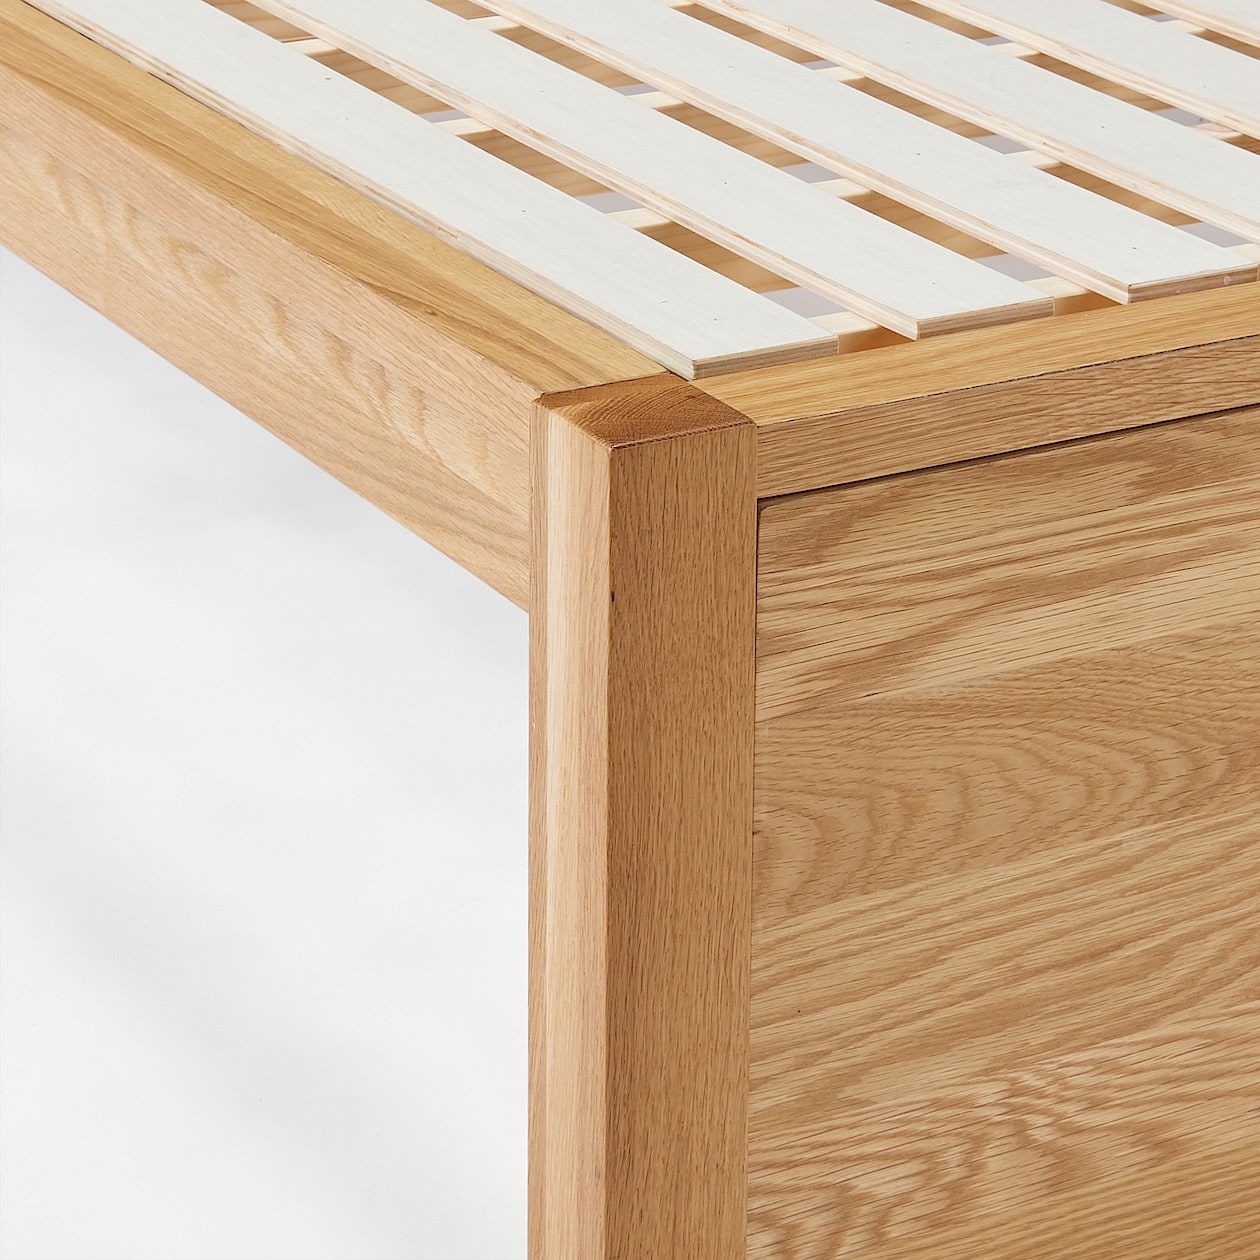 木製ベッド・オーク材・スモール